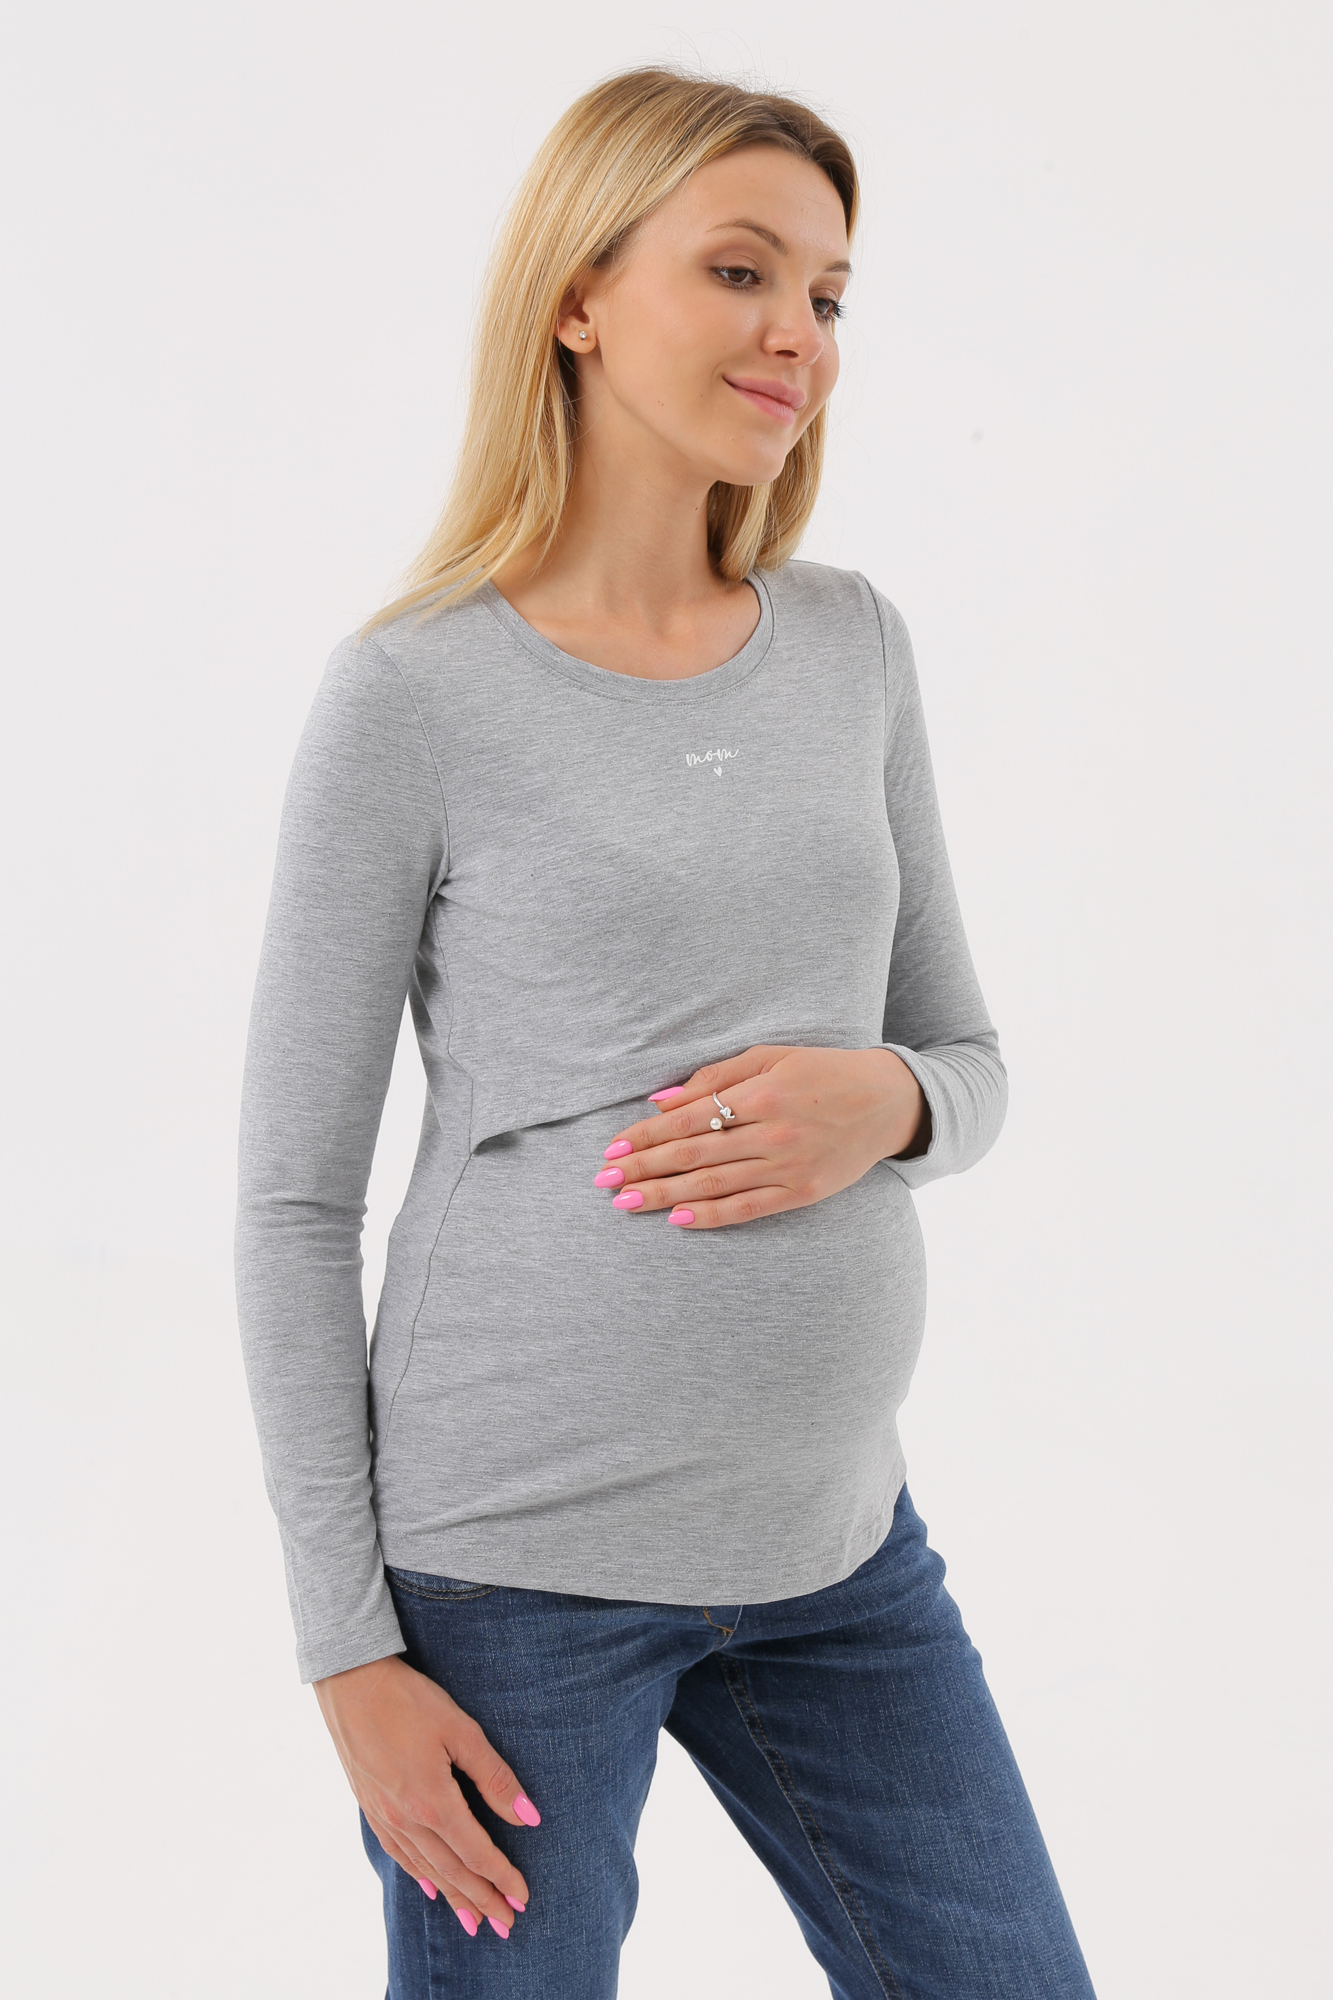 Лонгслив для беременных женский Magica bellezza МВ7038 серый 54 RU